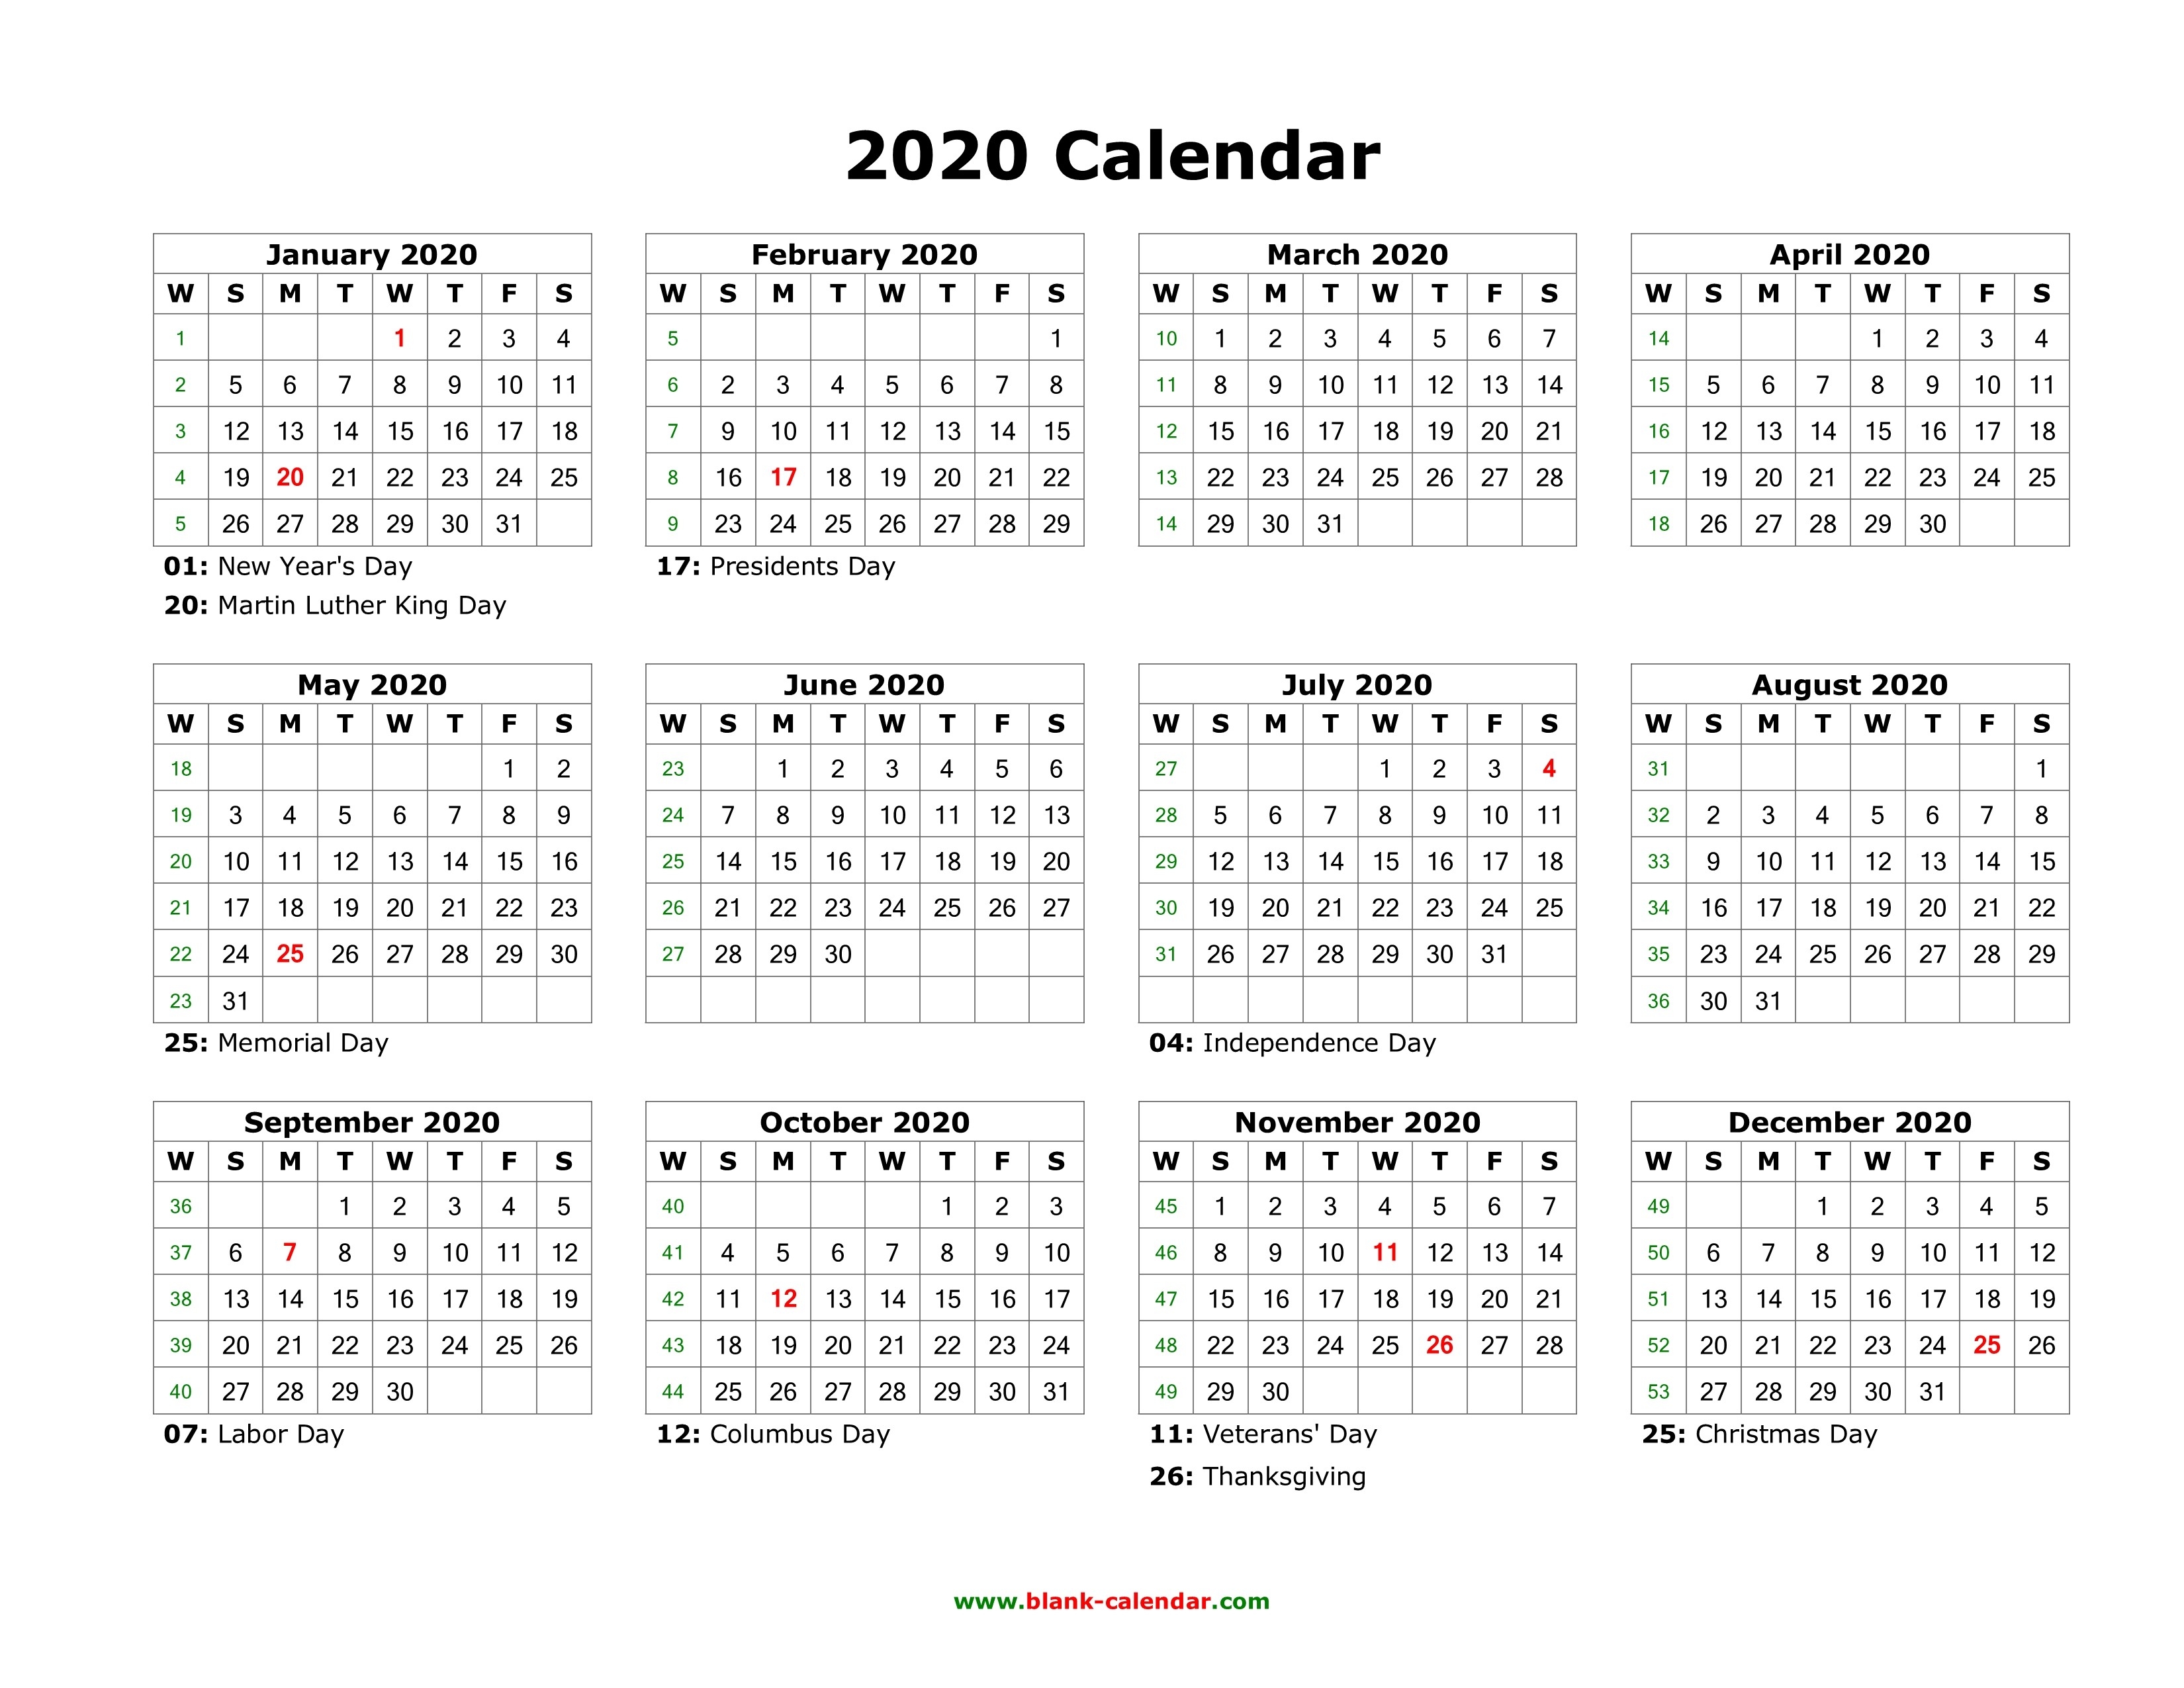 Blank Calendar 2020 | Free Download Calendar Templates-Word Calendar Template 2020